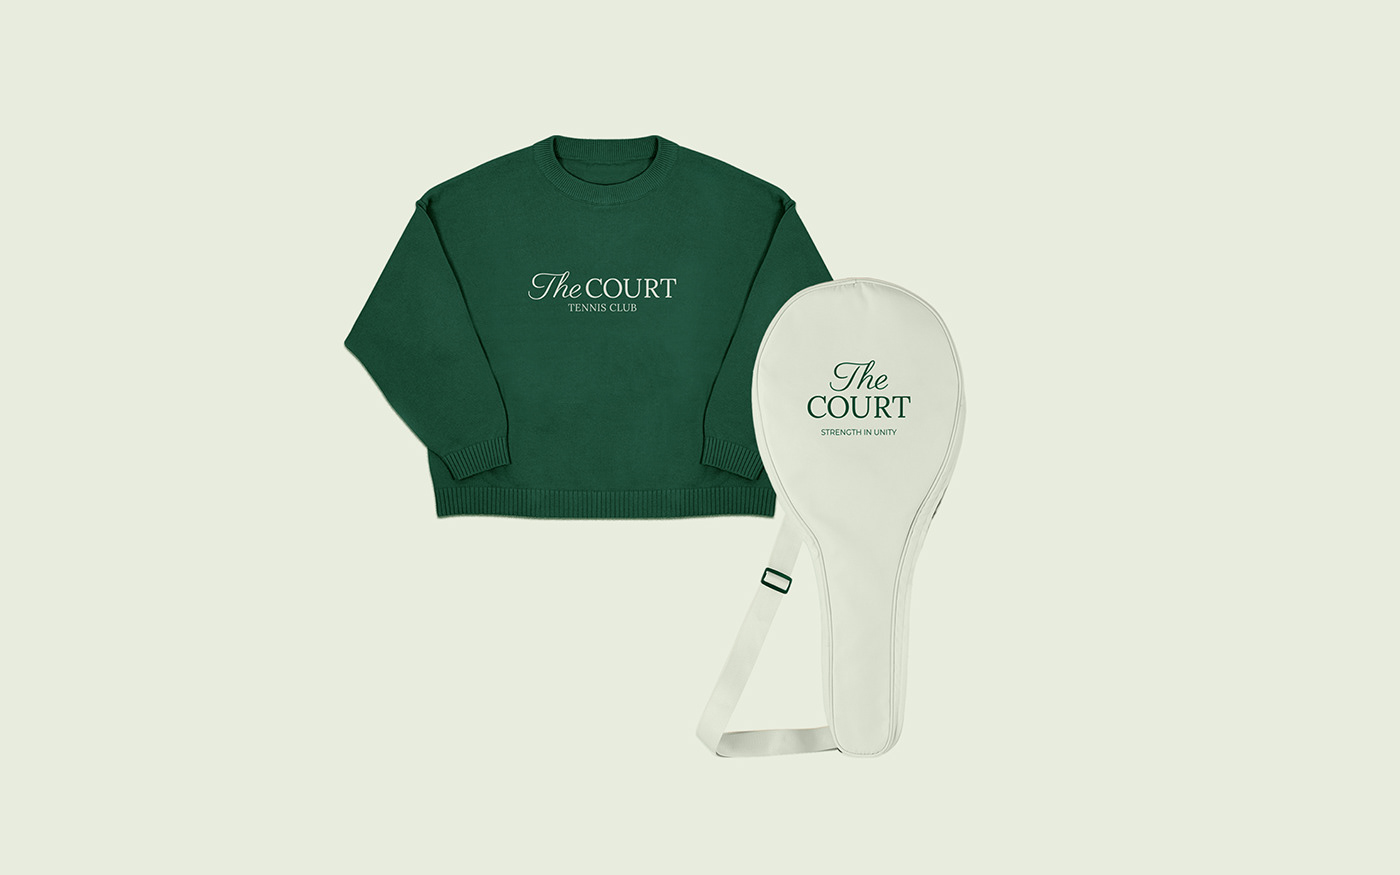 Sweatshirt and tennis rackets bag